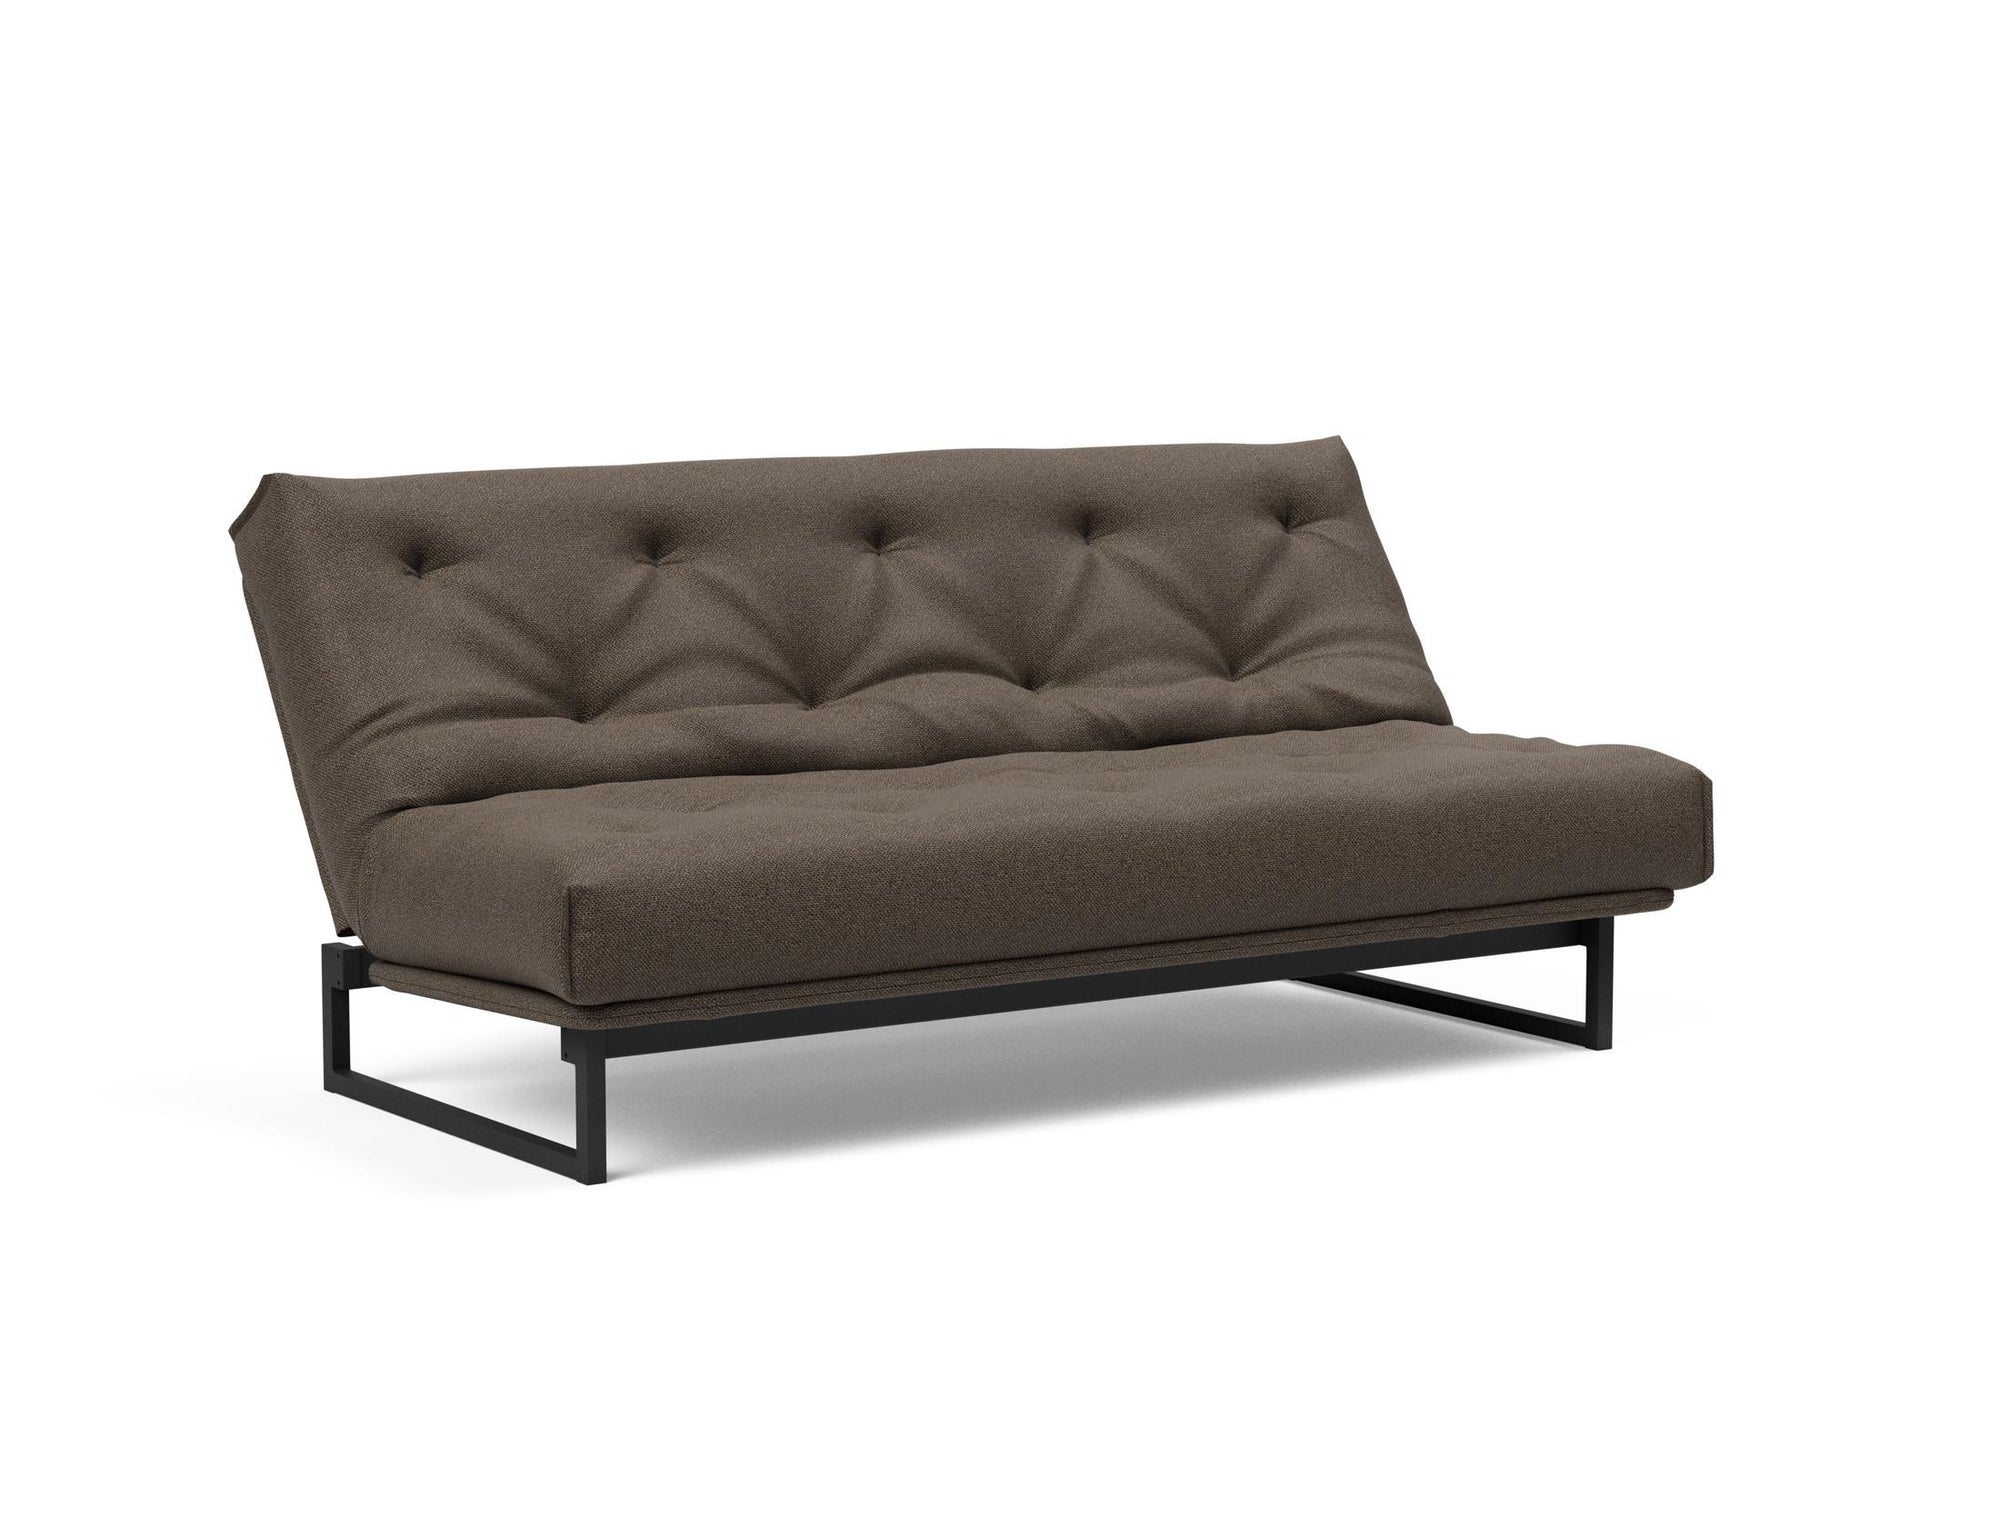 FRACTION Super Soft Sofa Bed 140CM